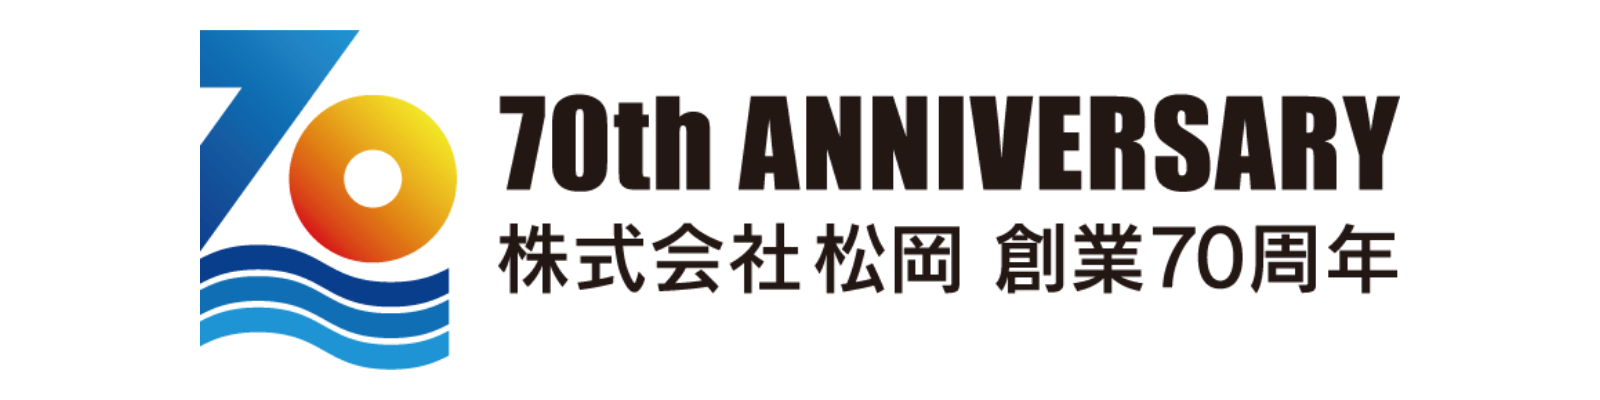 70th Anniversary 株式会社松冈 创业70周年